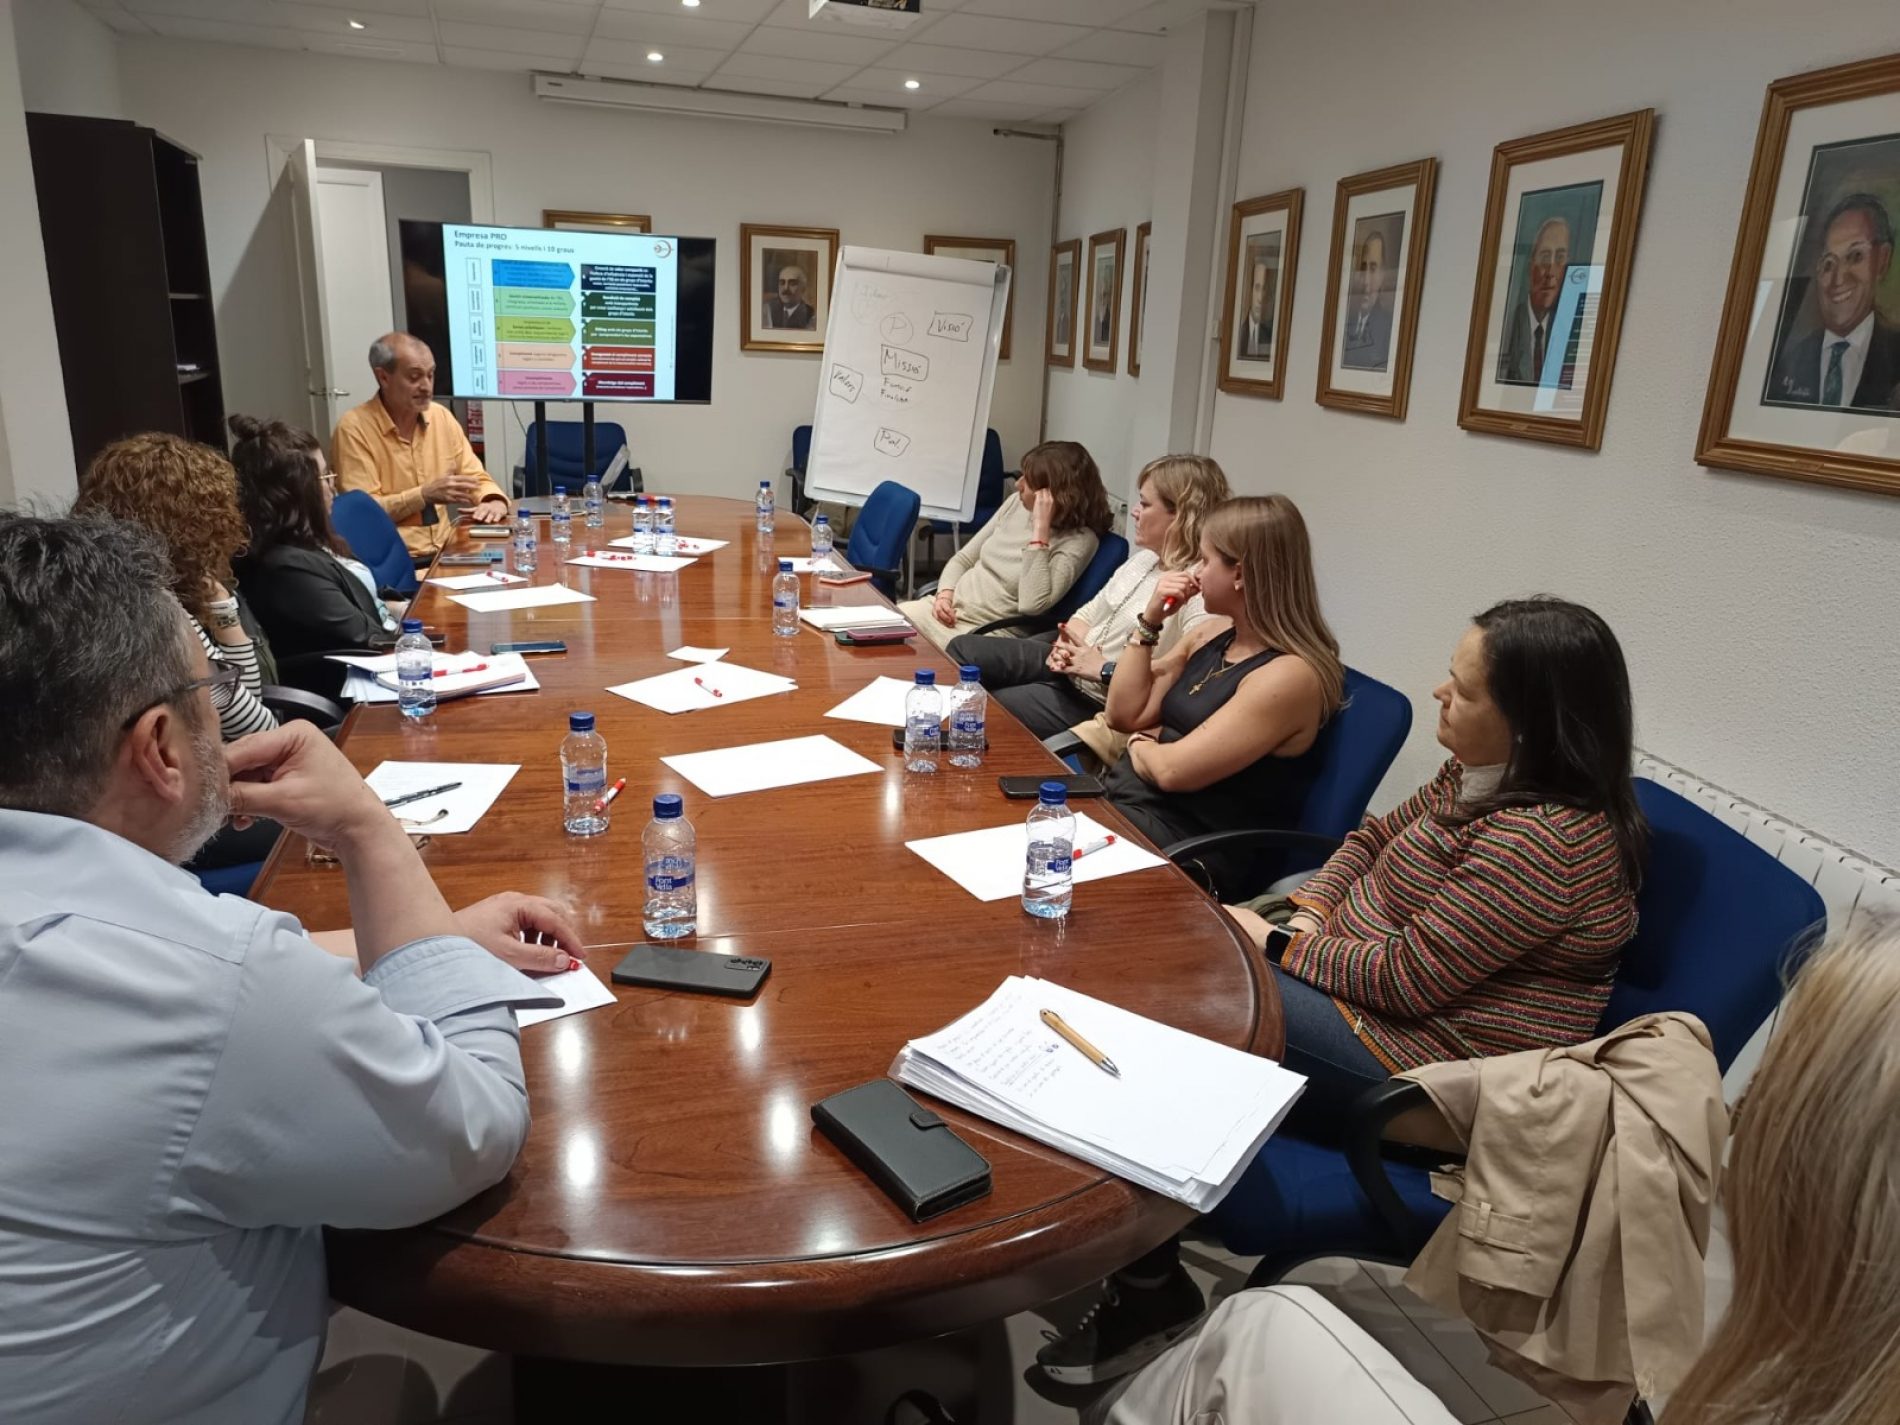 Primera sessió a Lleida del Seminari directiu per construir el propòsit empresarial